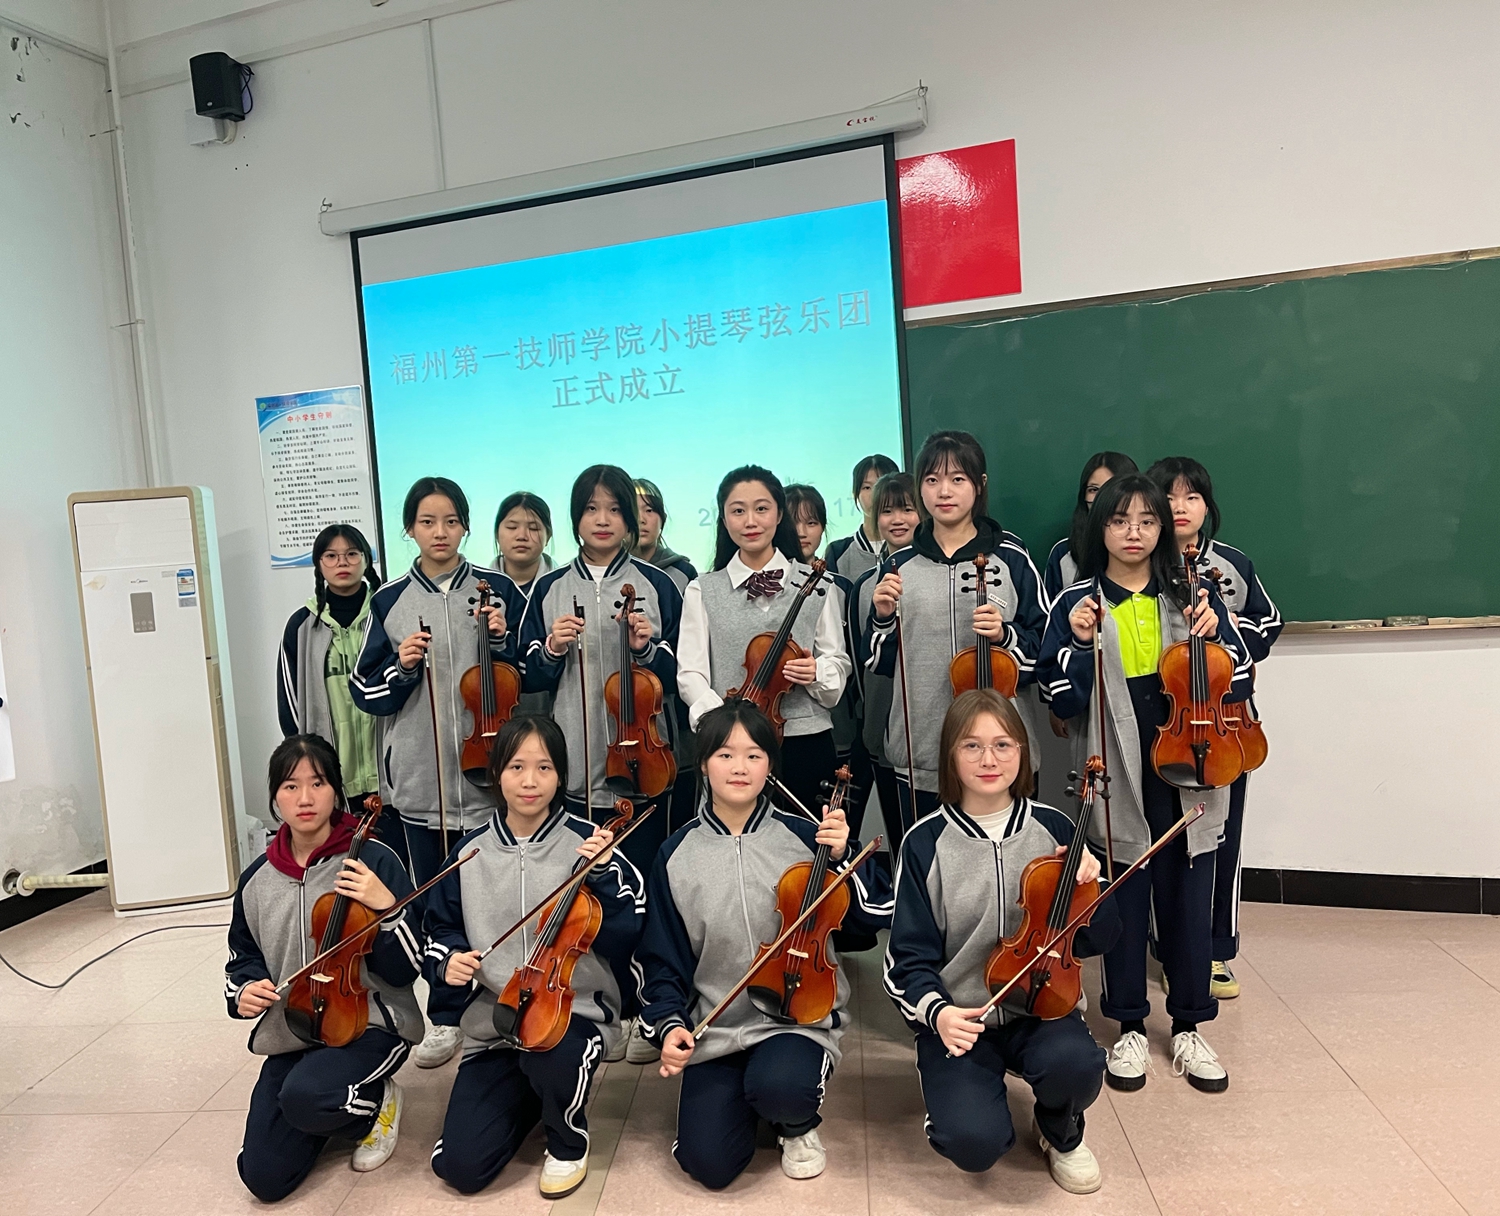 【弦乐团成立】福州第一技师学小提琴弦乐团成立(图1)